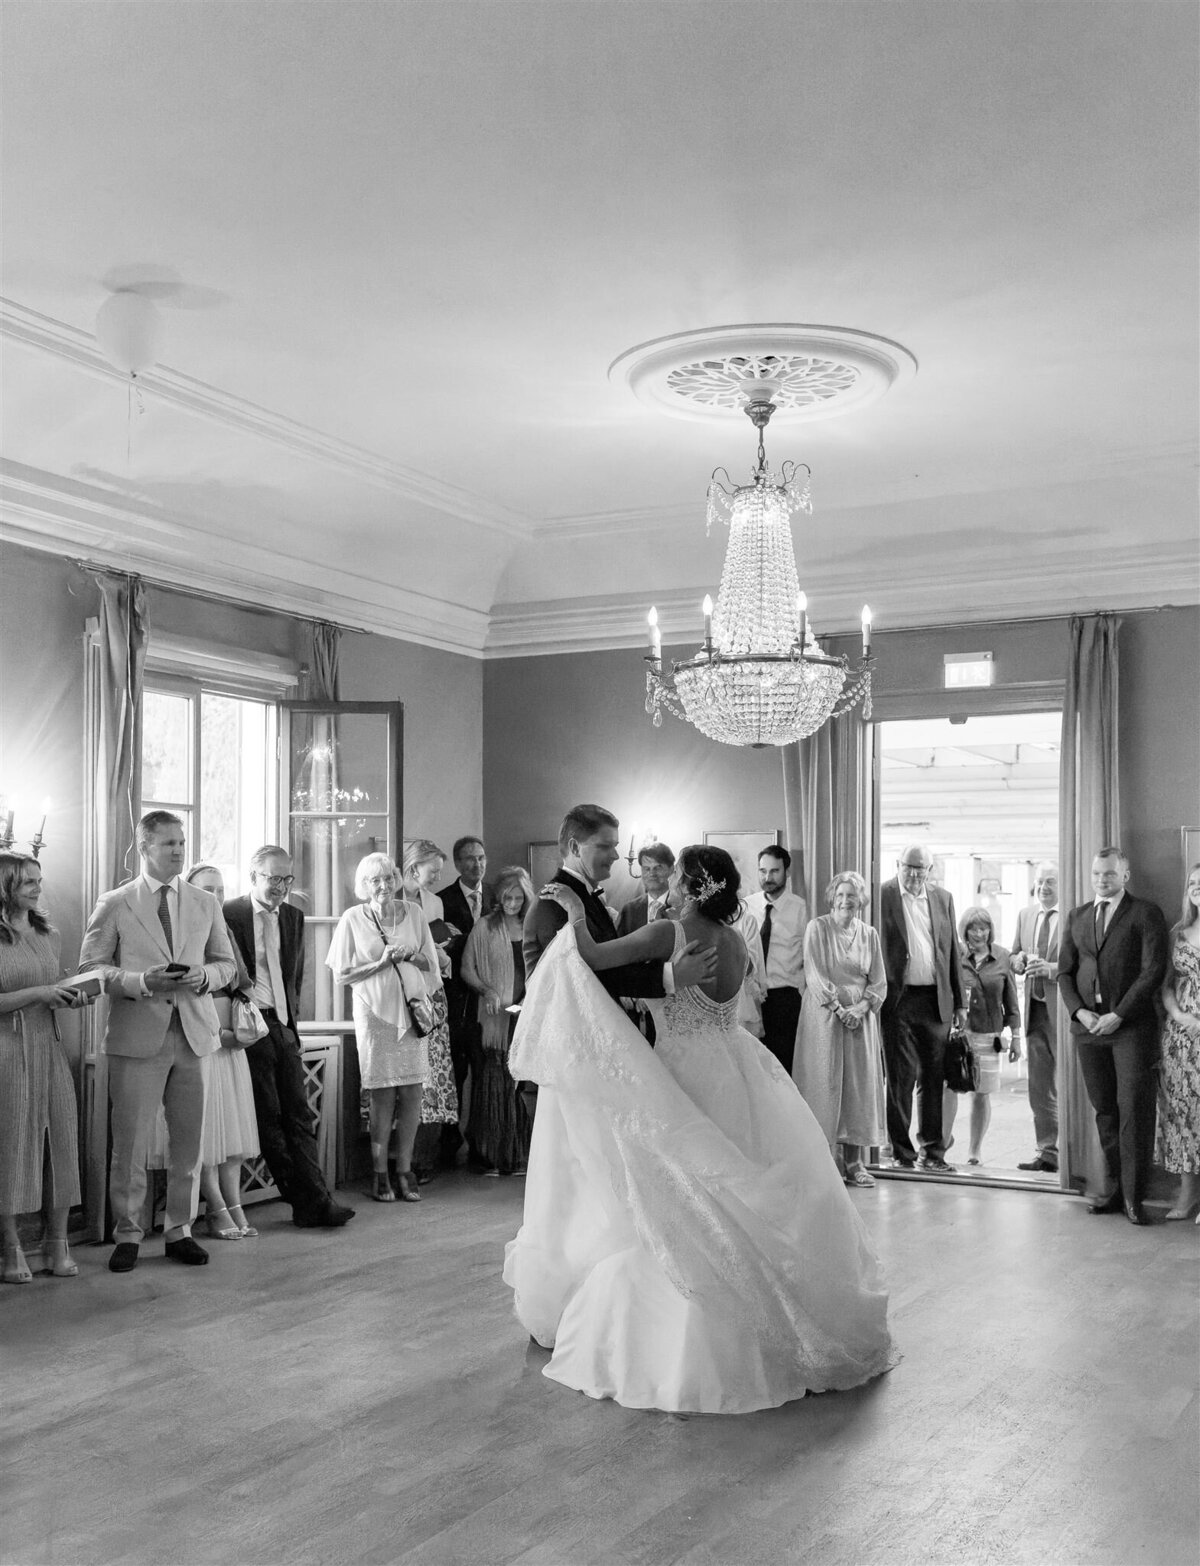 Wedding Photographer Anna Lundgren - helloalora_Wedding at Stallmästaregården in Stockholm Sweden3